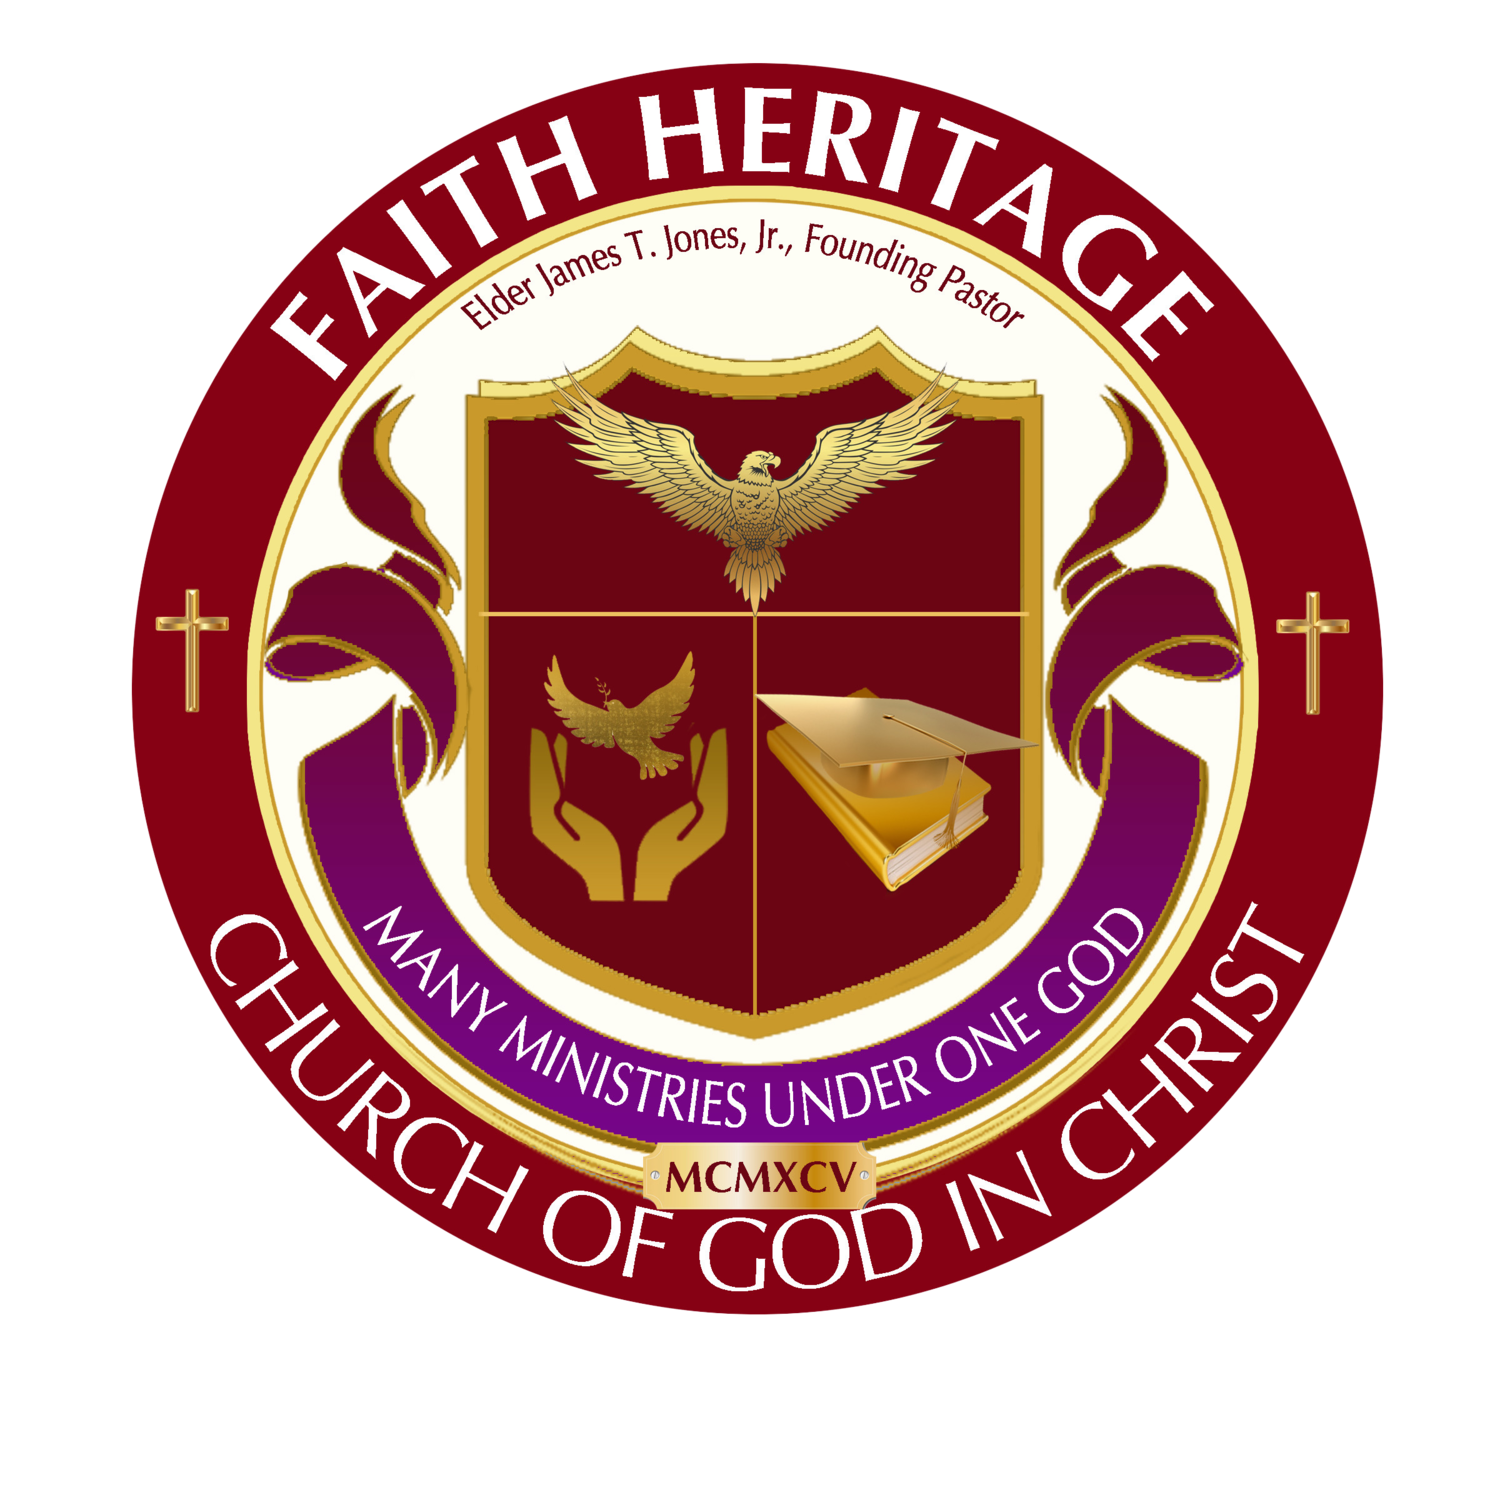 Faith Heritage Church of God in Christ